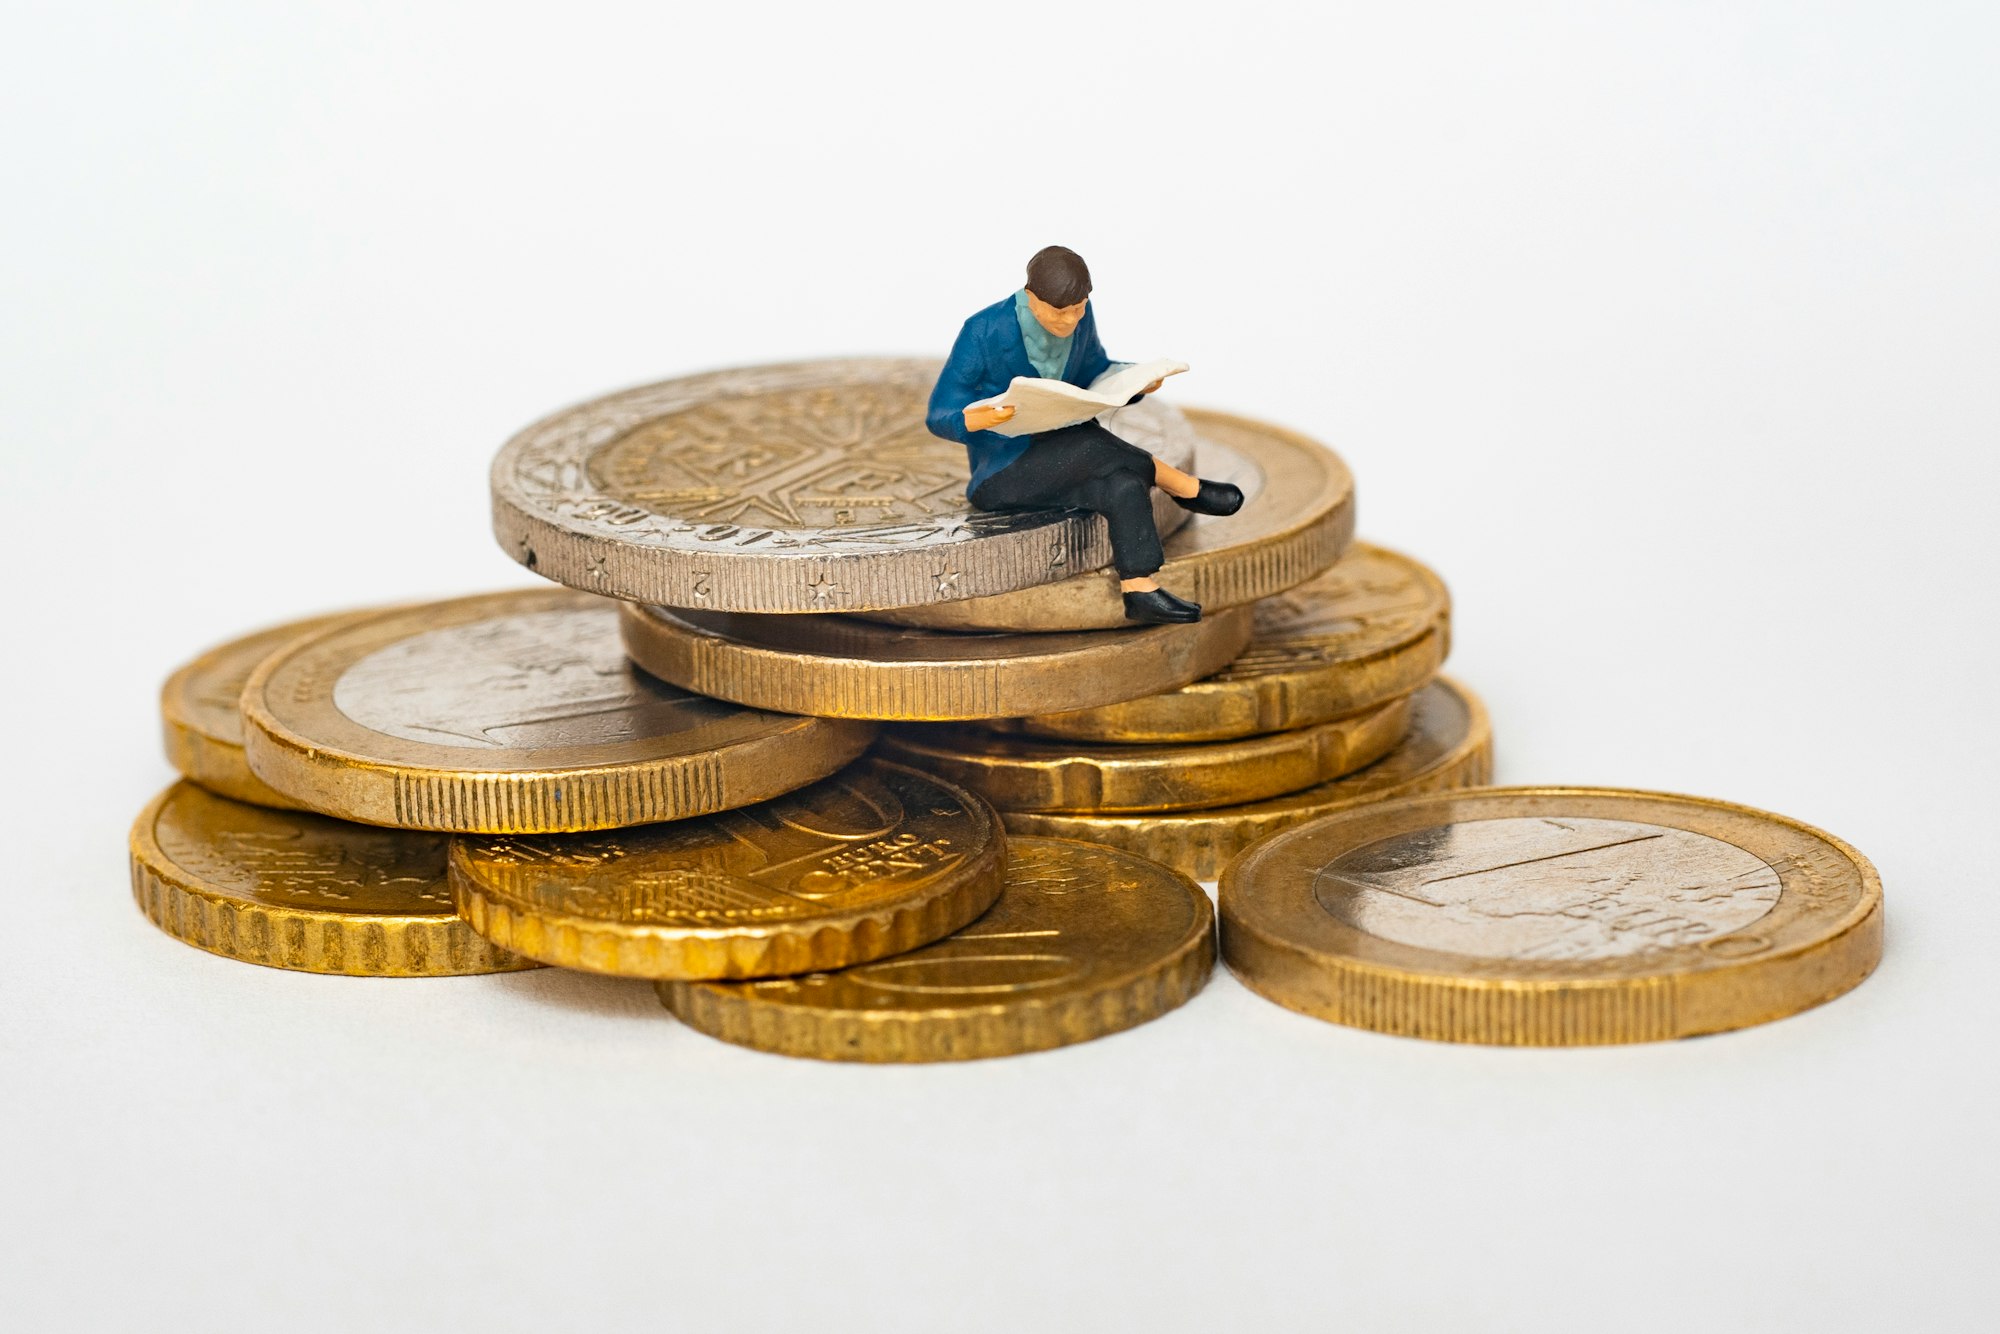 personnage avec une veste bleue lisant le journal assis sur une pile de pièces de monnaie euro sur un fond blanc.